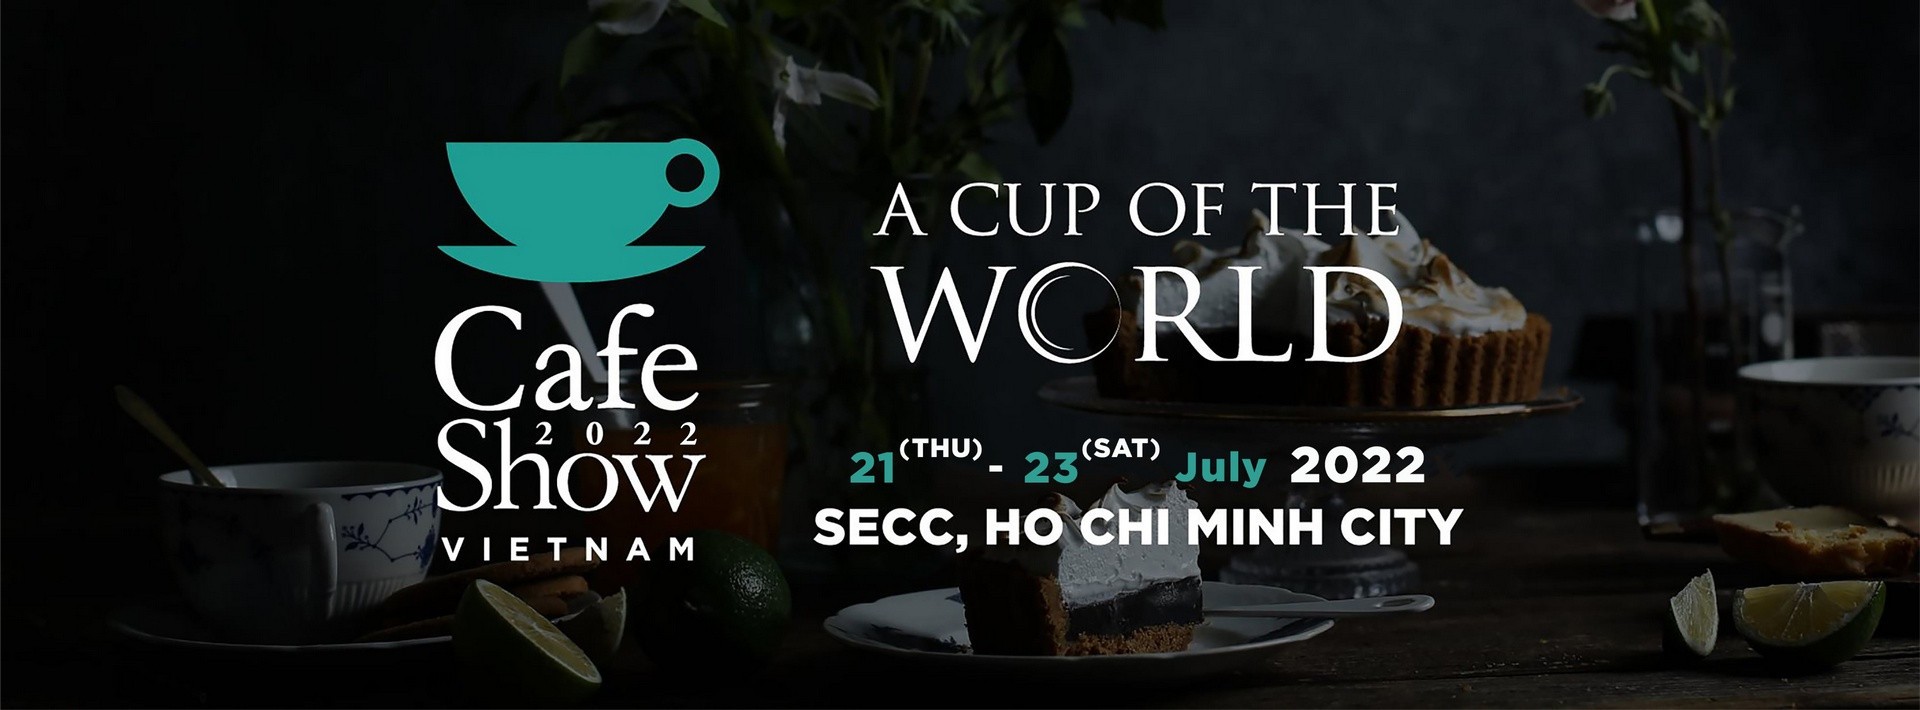 Cafe Show Vietnam 2022 - Triển lãm Quốc tế Cà Phê tại Việt Nam